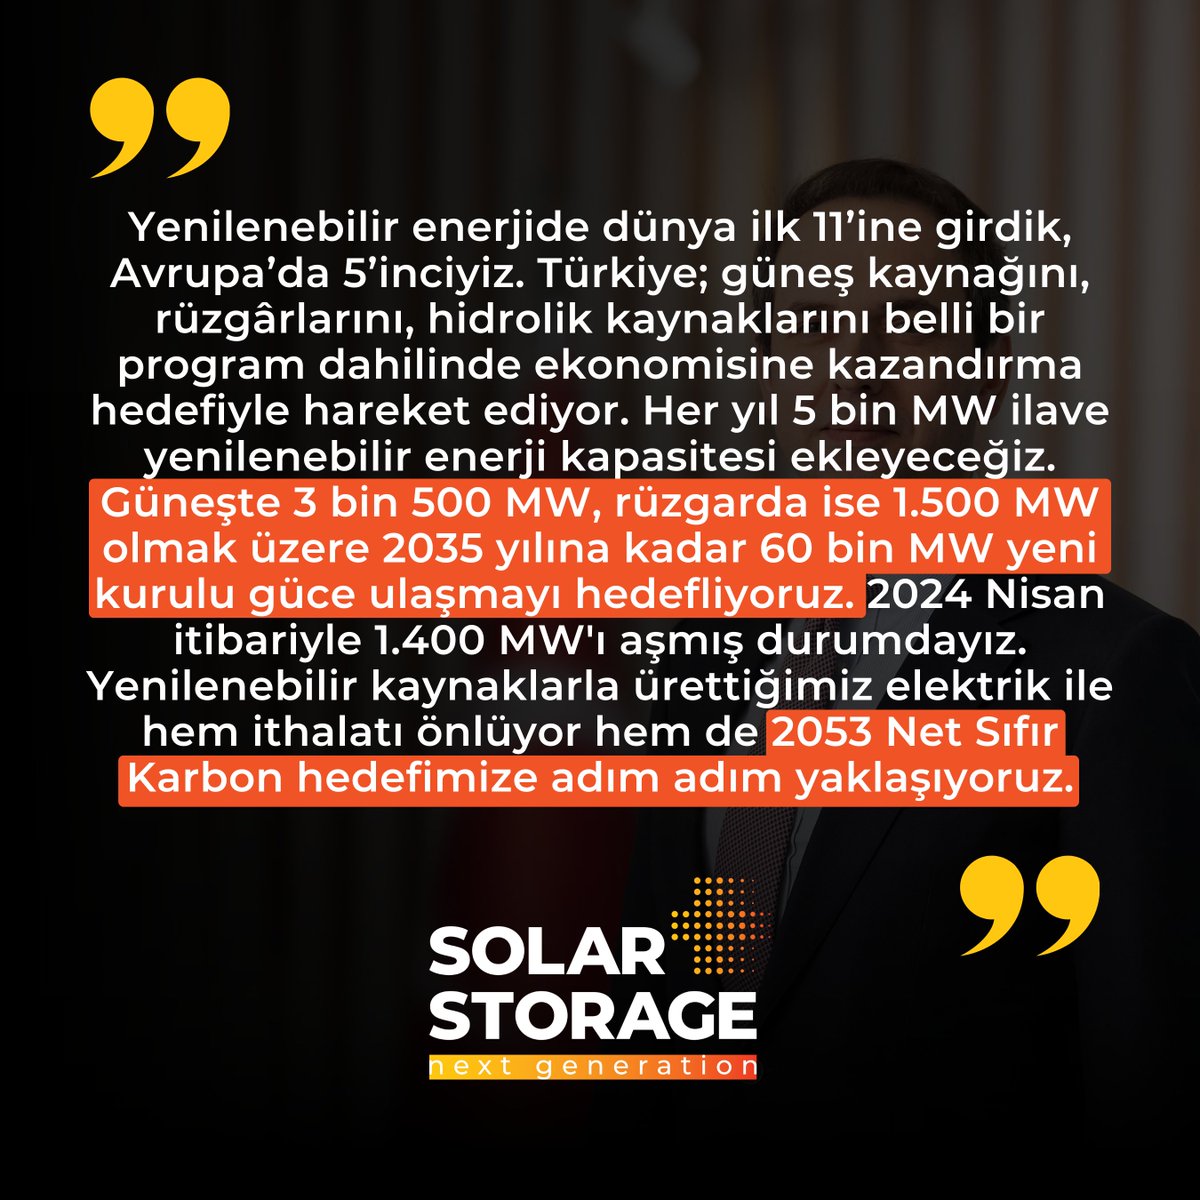 T.C. Enerji ve Tabii Kaynaklar Bakanlığı Bakanı Alparslan Bayraktar'ın bu açıklamaları, ülkemizin yenilenebilir enerji potansiyelinin ne kadar büyük olduğunu bir kez daha gösteriyor.